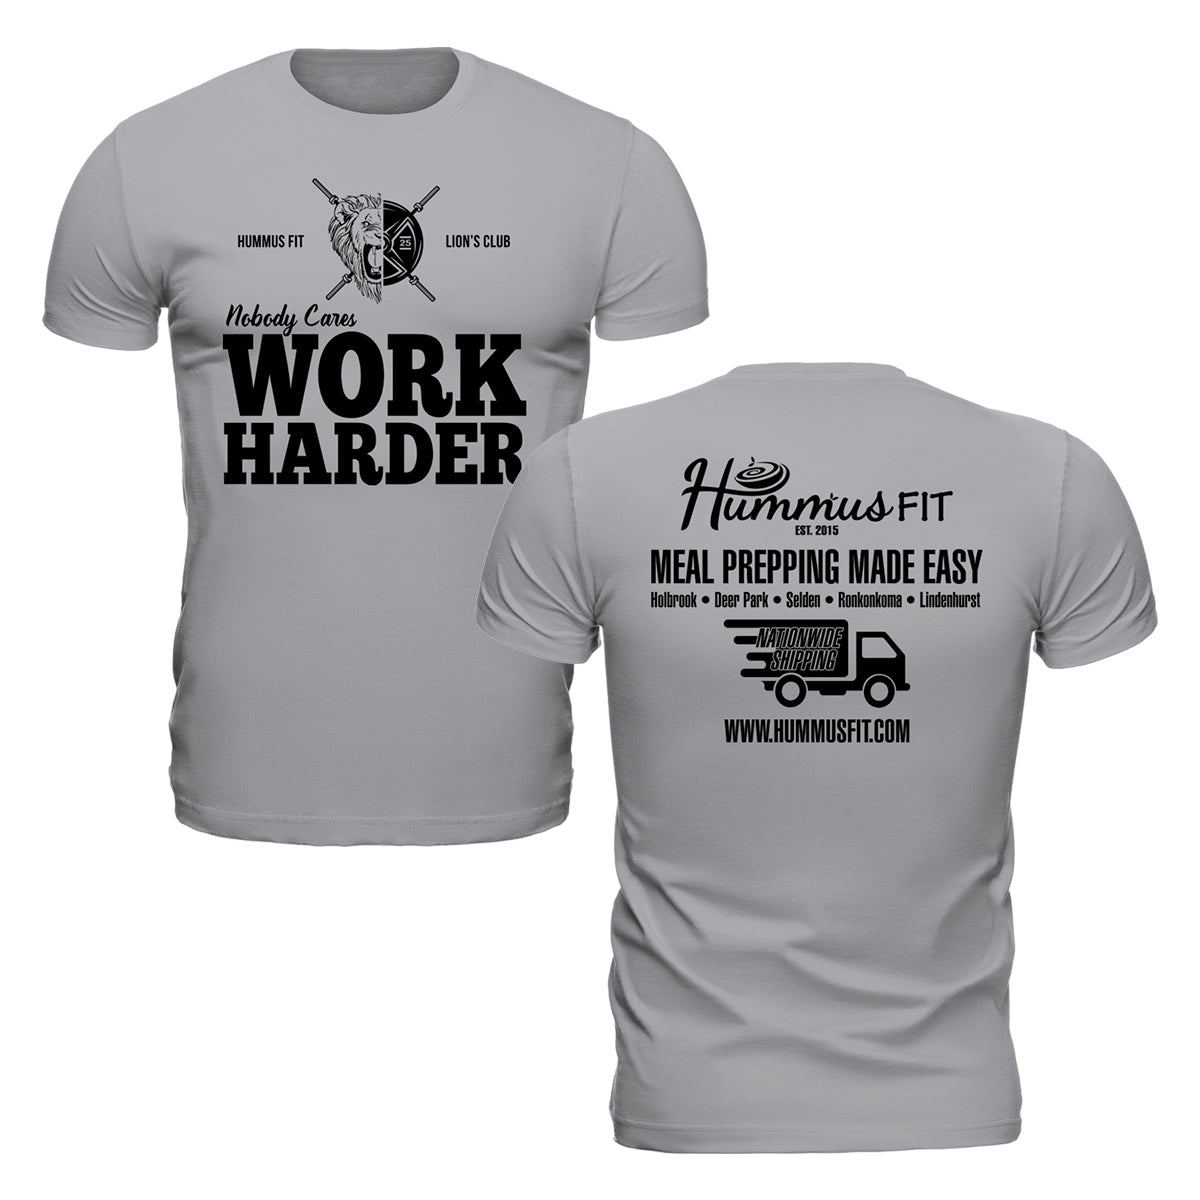 A nadie le importa trabajar más duro - Camiseta unisex Softstyle (gris deportivo)